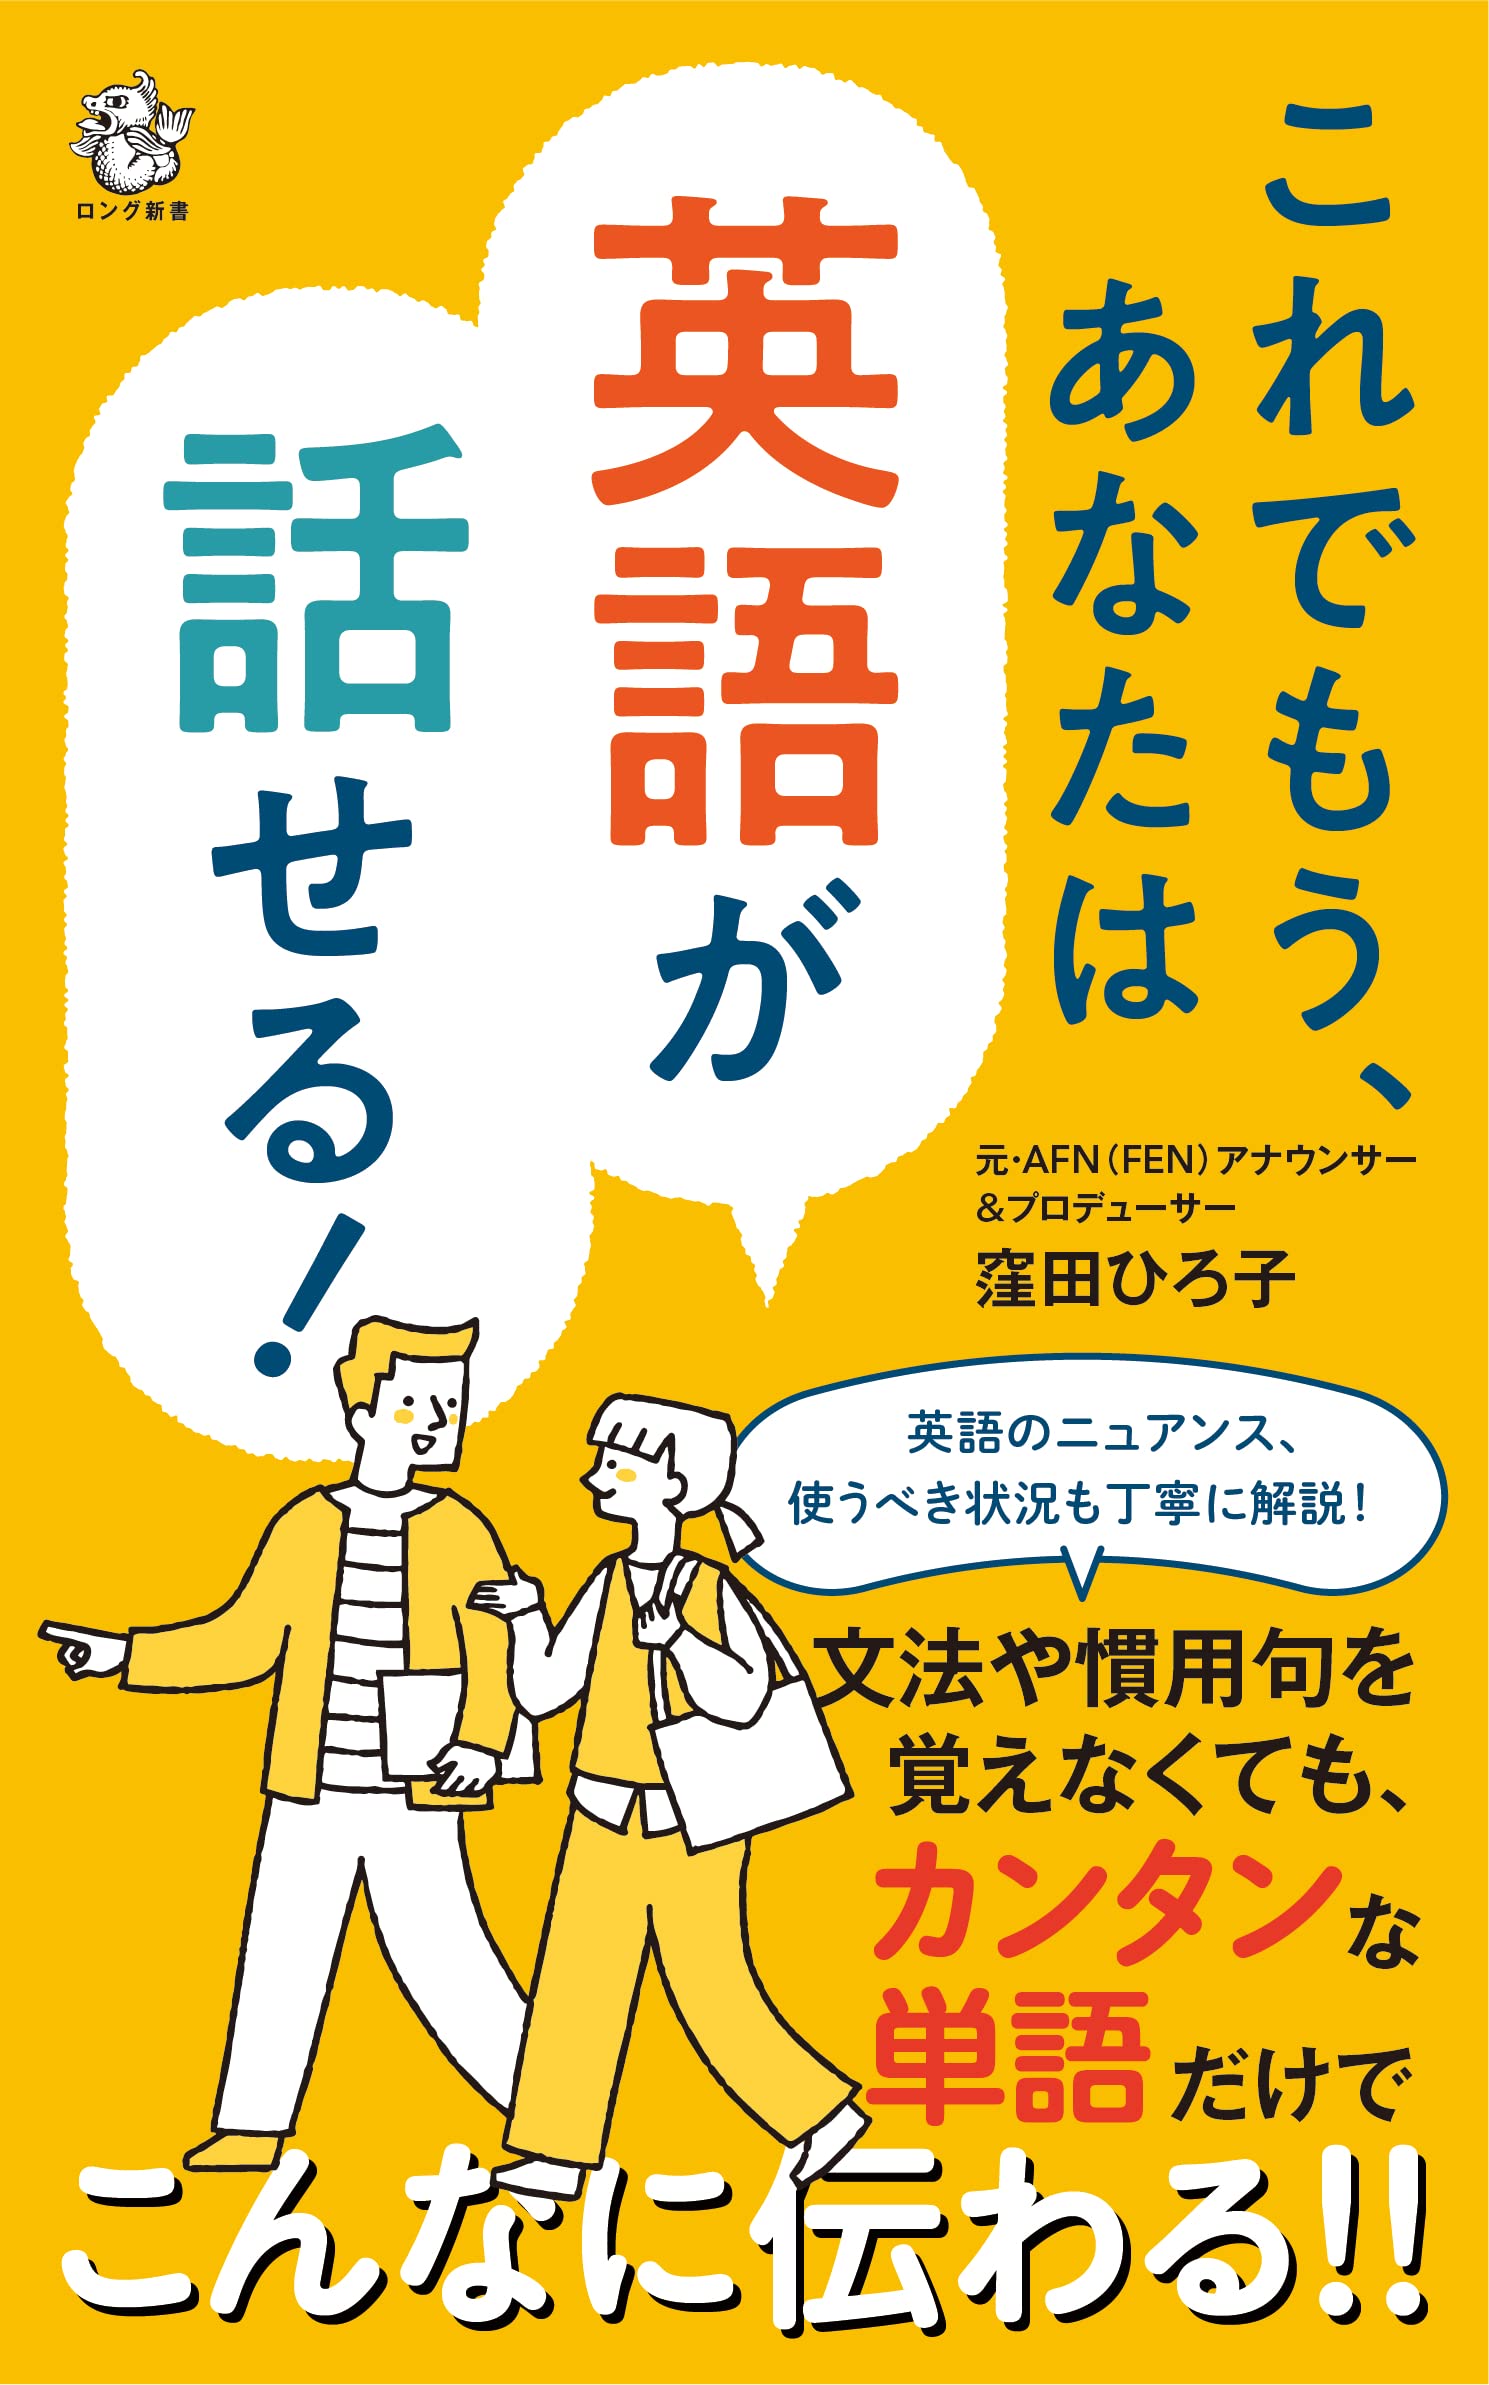 『これでもう、あなたは英語が話せる!』
著・窪田 ひろ子